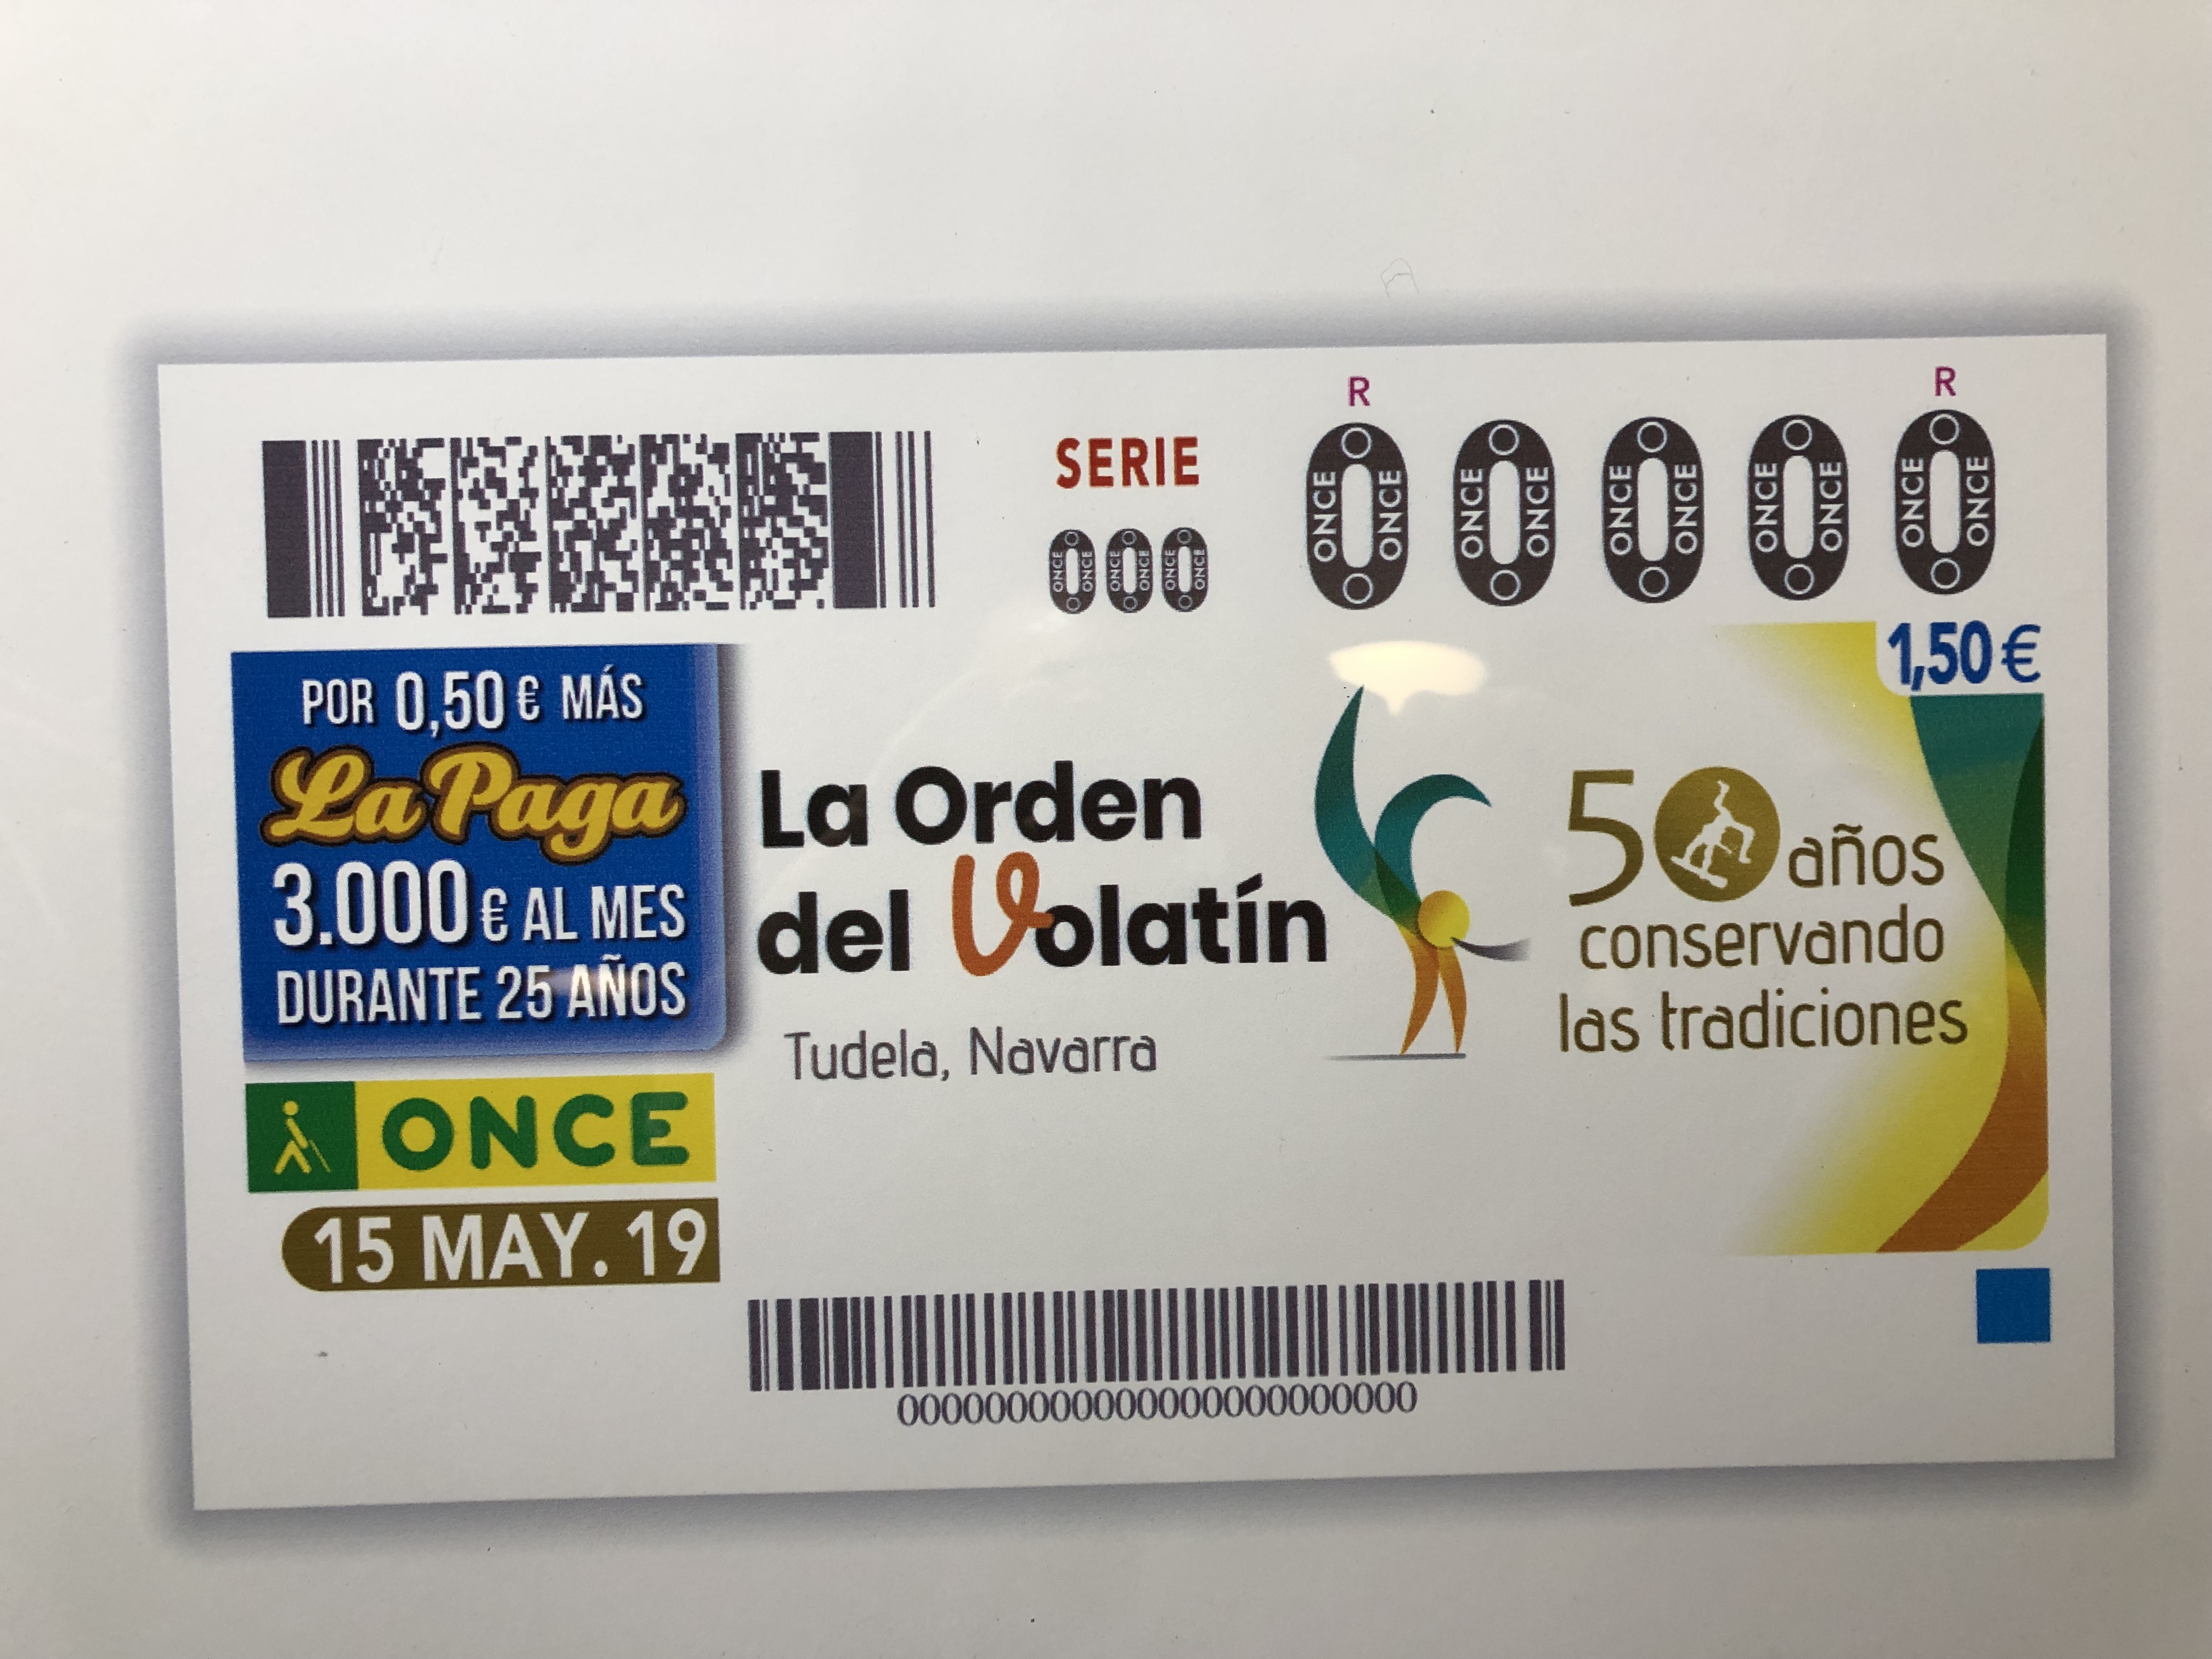 La Orden del Volatín de Tudela celebra su 50 aniversario en el cupón de la ONCE, correspondiente al 15 de Mayo